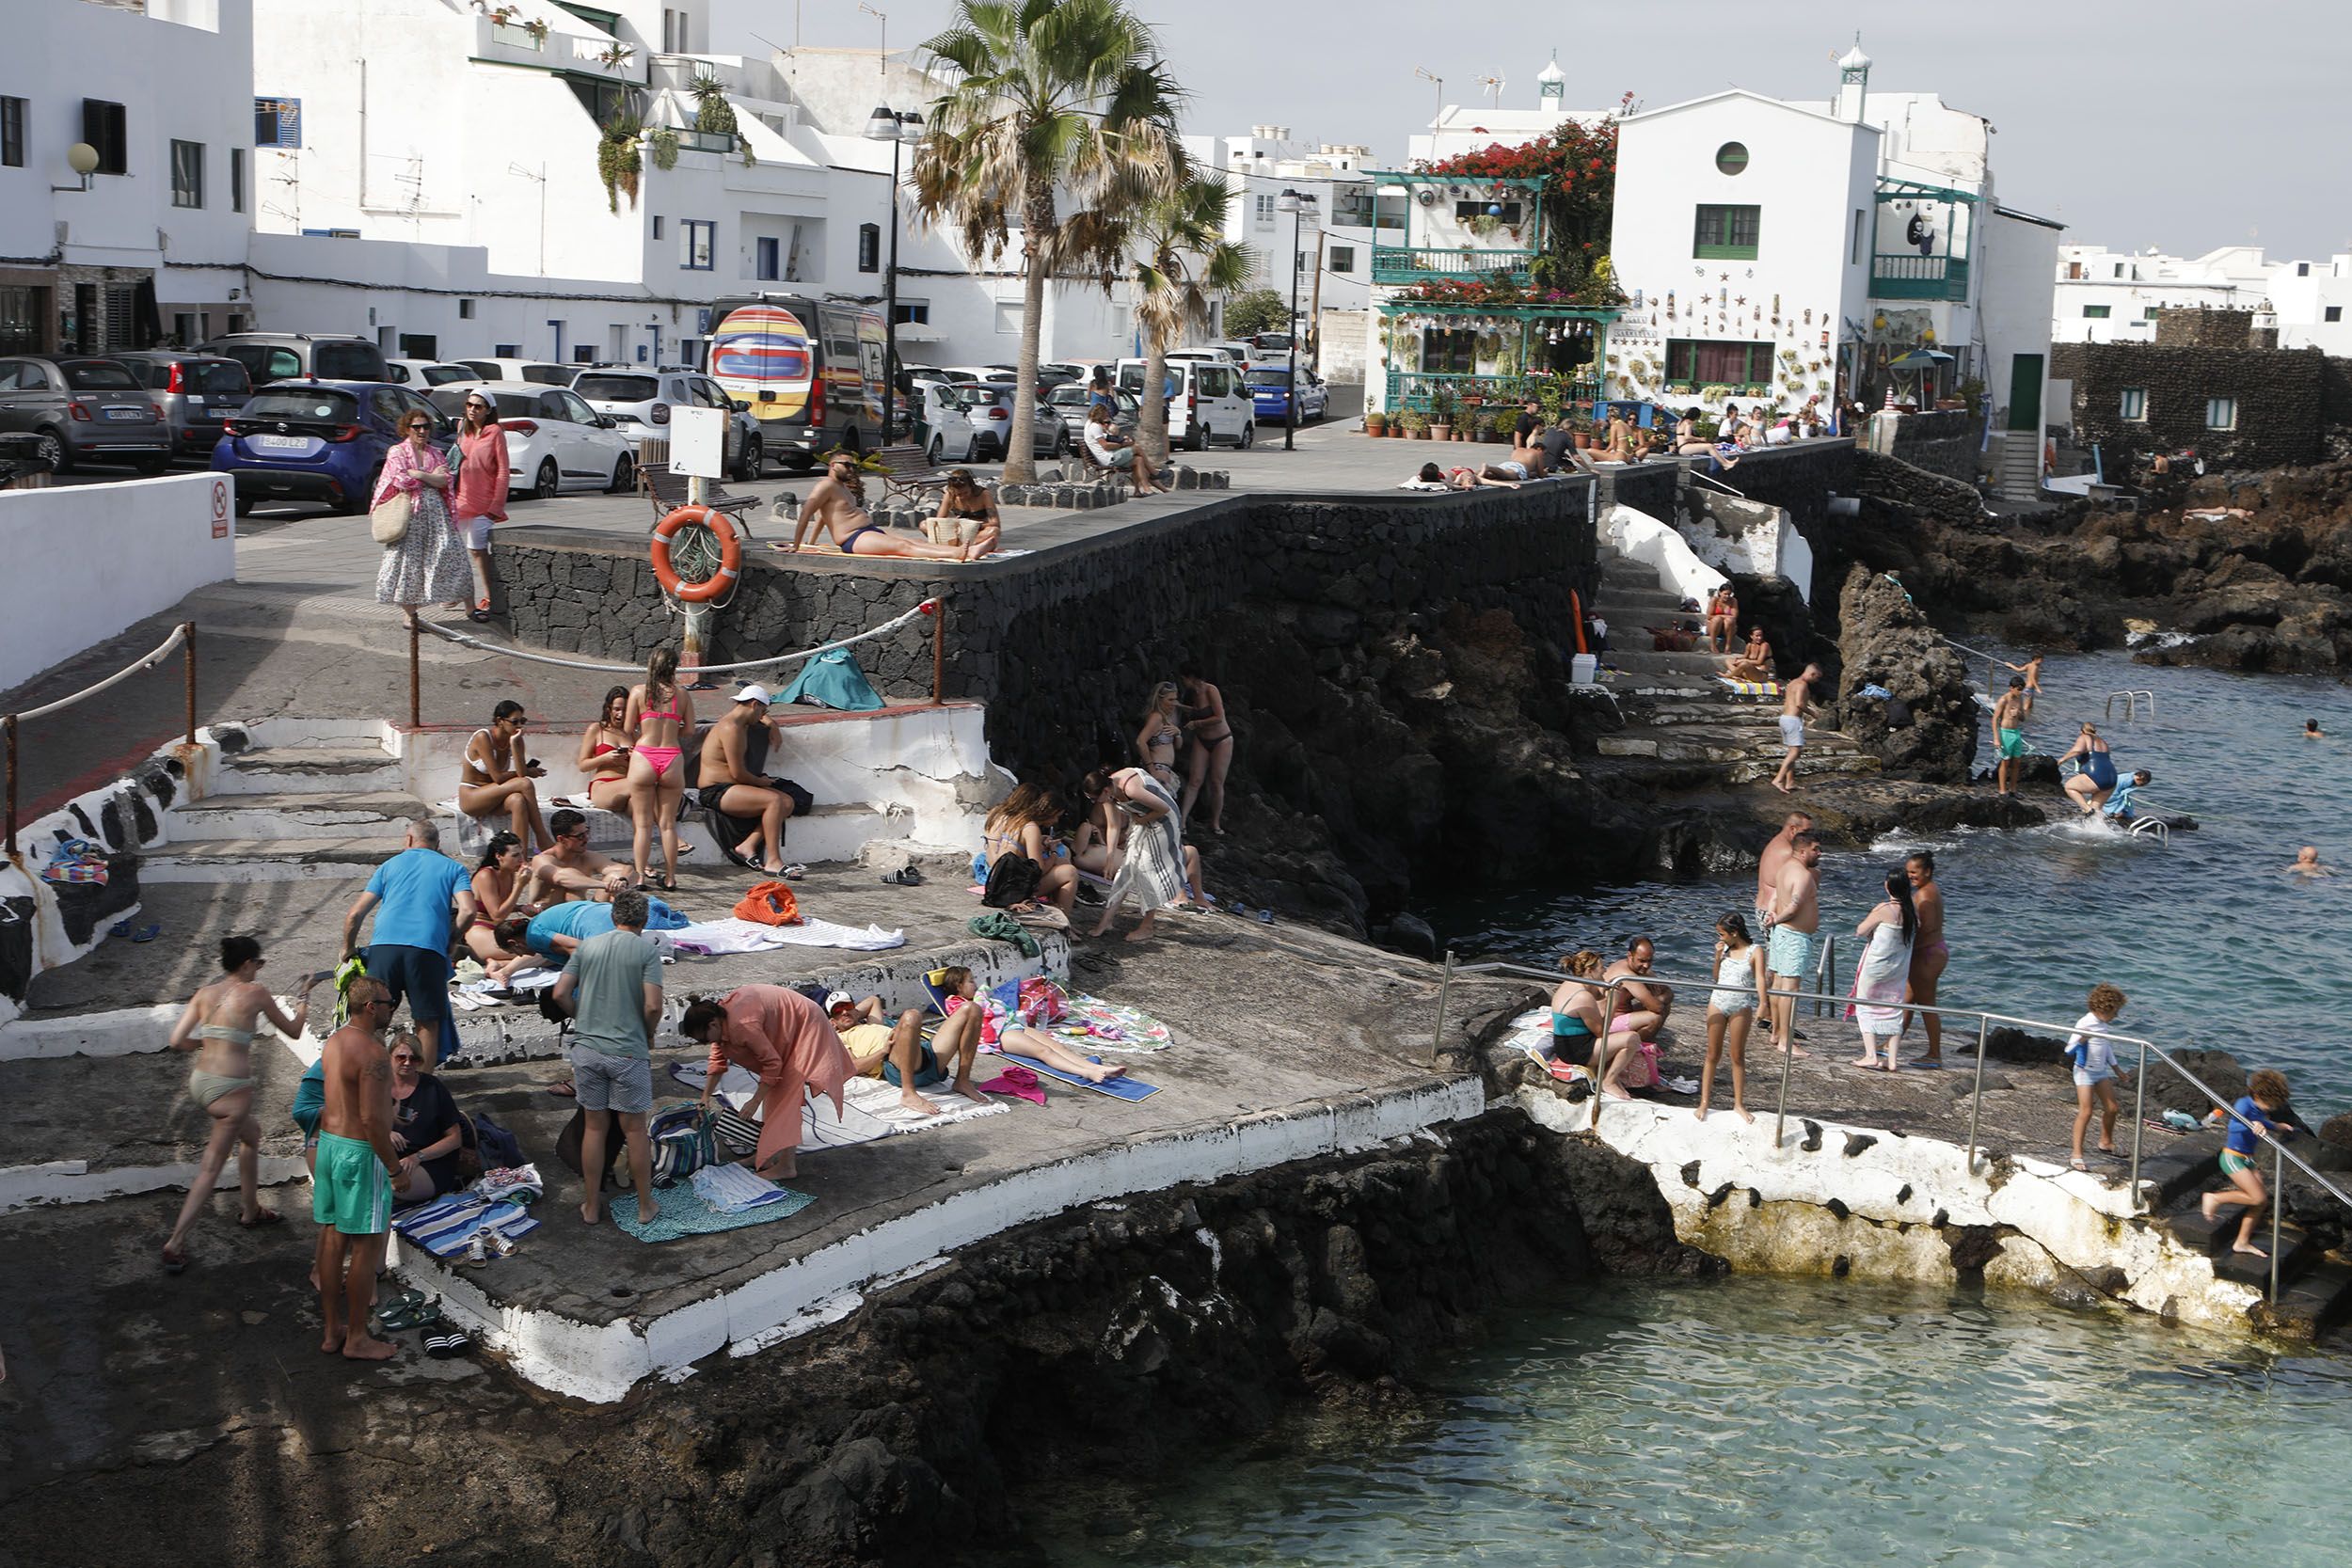   Personas disfrutan de Punta Mujeres en un día de calor en verano. Foto: José Luis Carrasco.